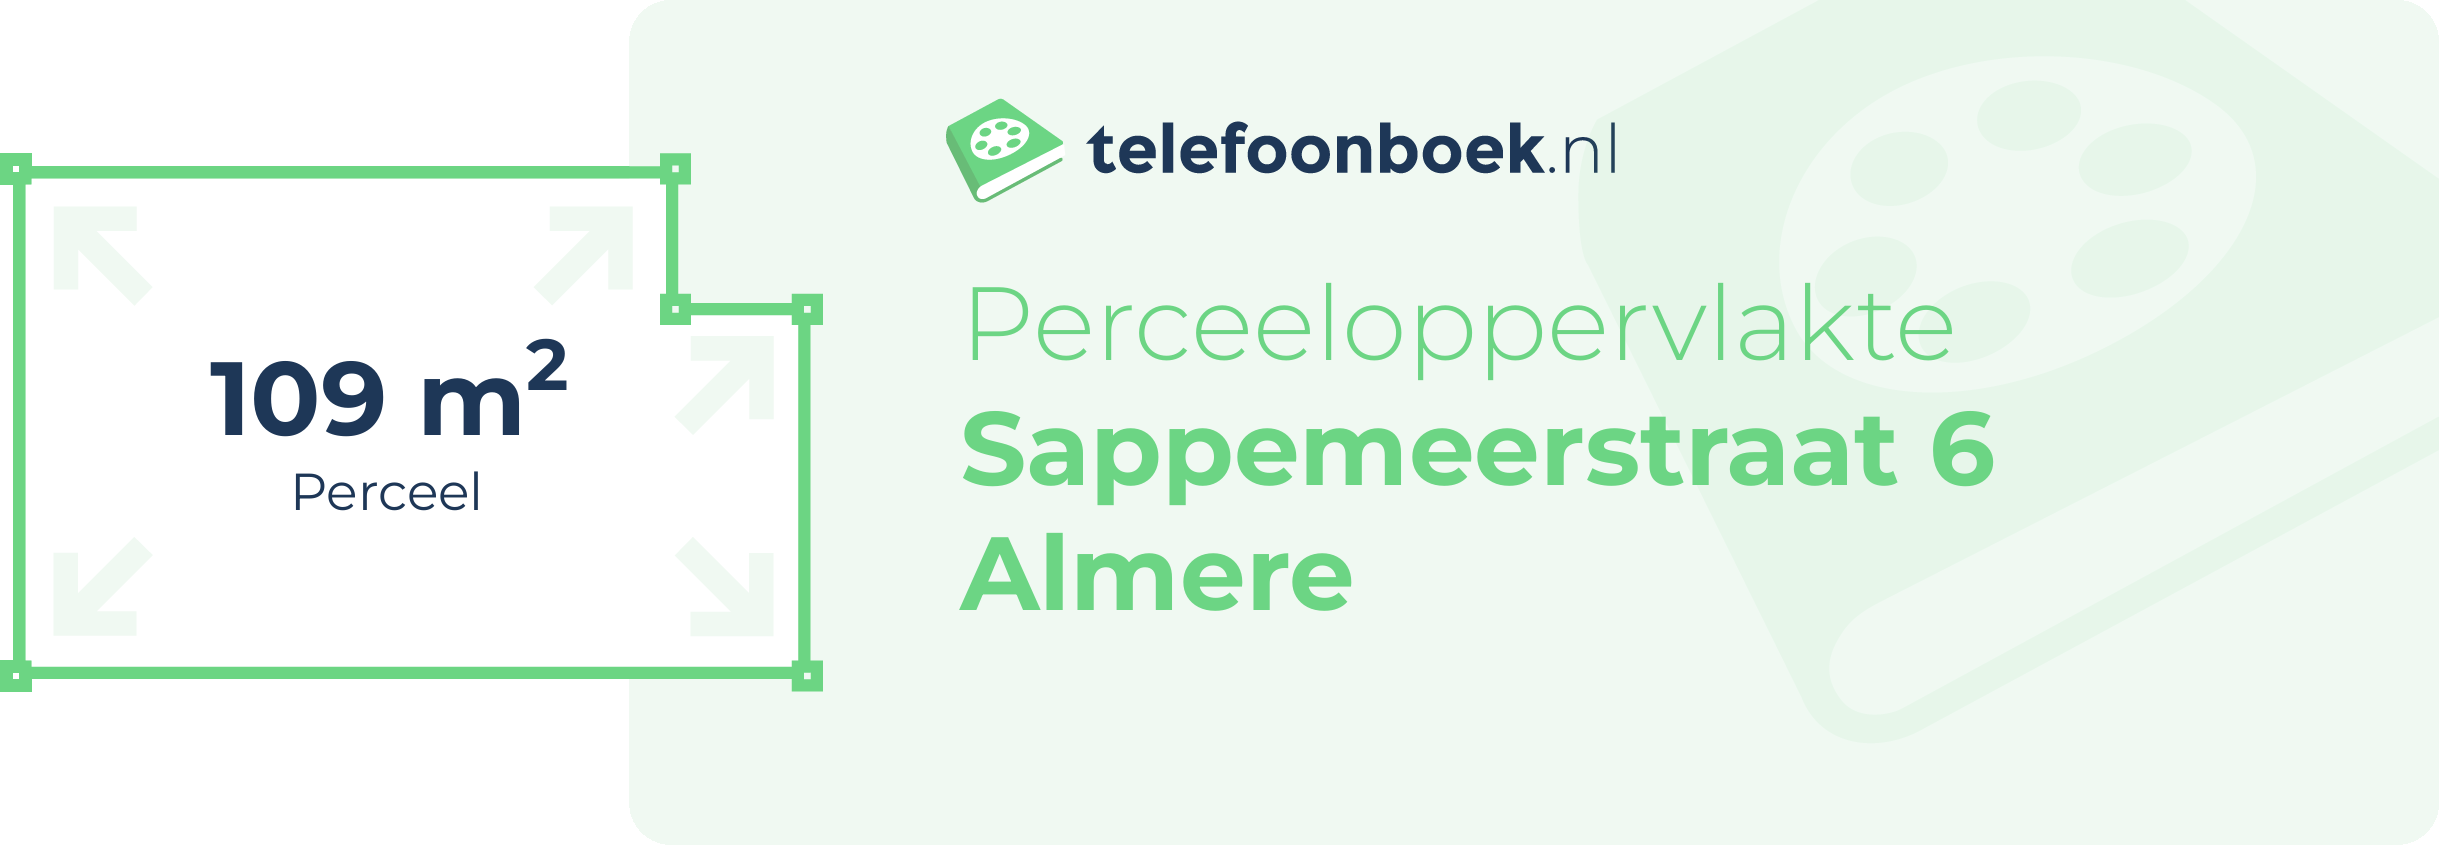 Perceeloppervlakte Sappemeerstraat 6 Almere